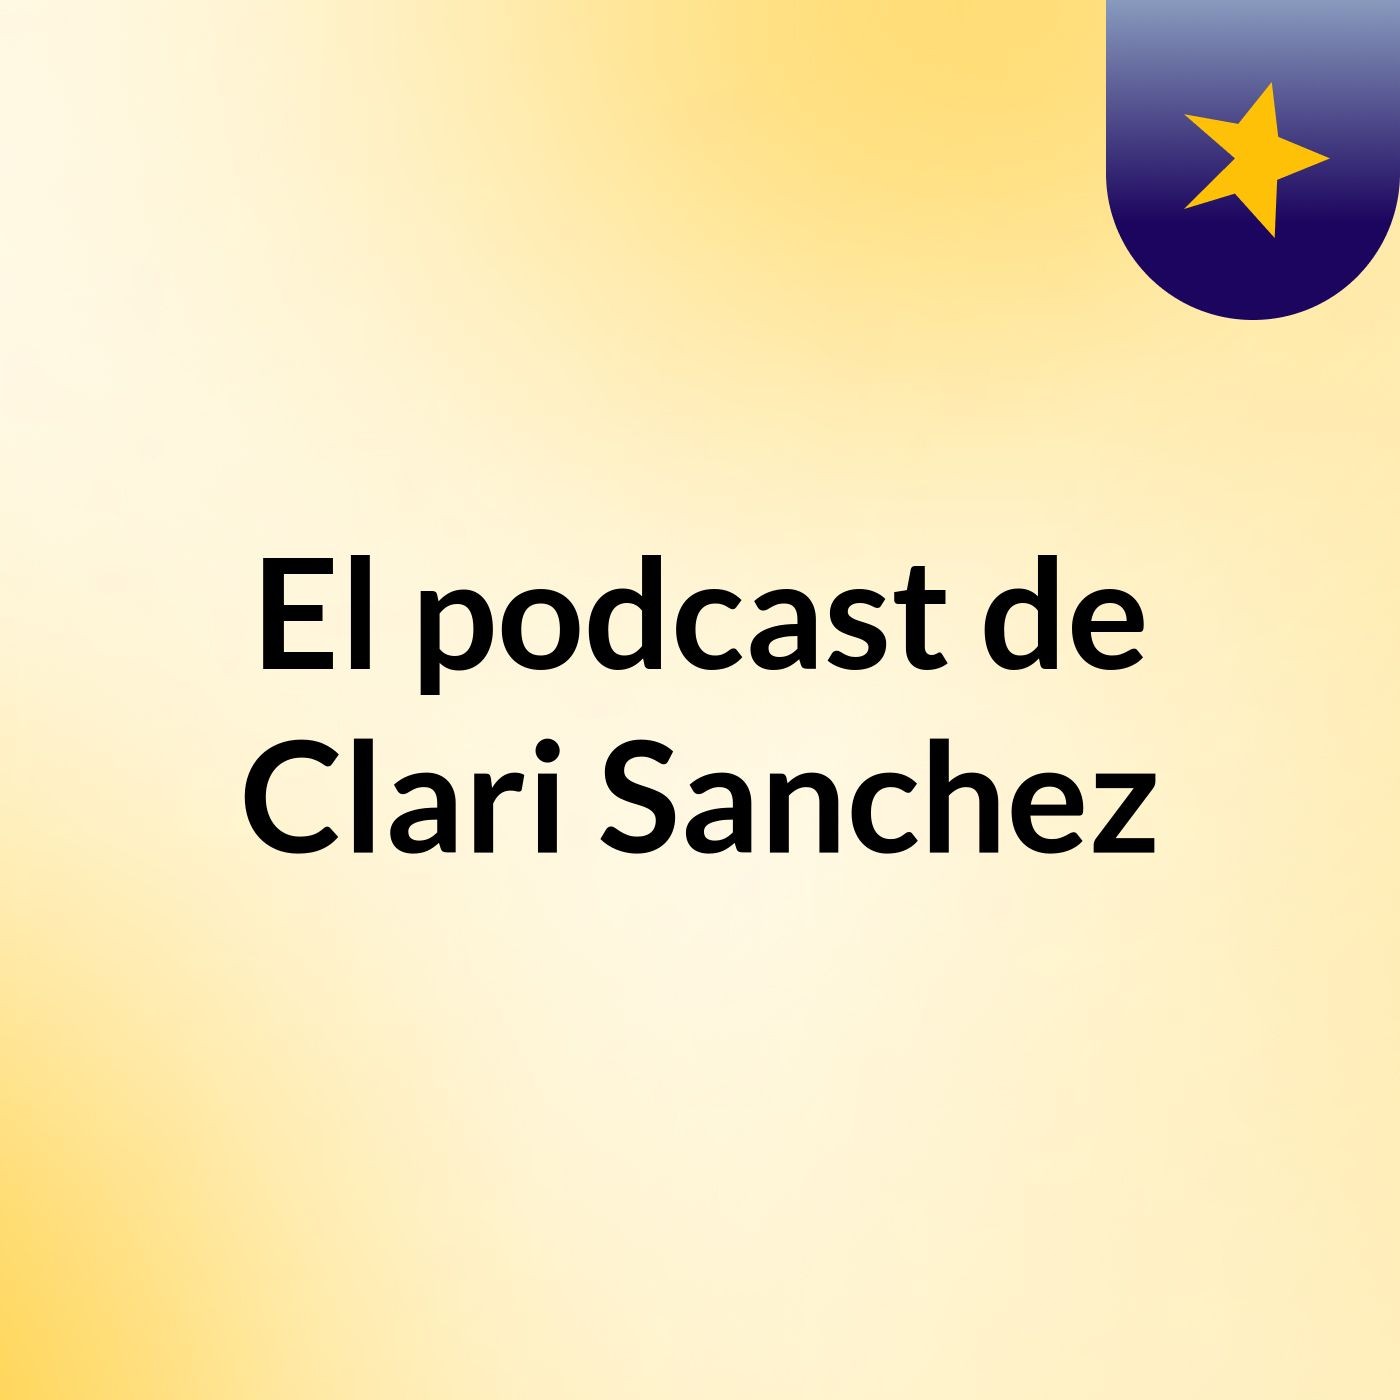 El podcast de Clari Sanchez